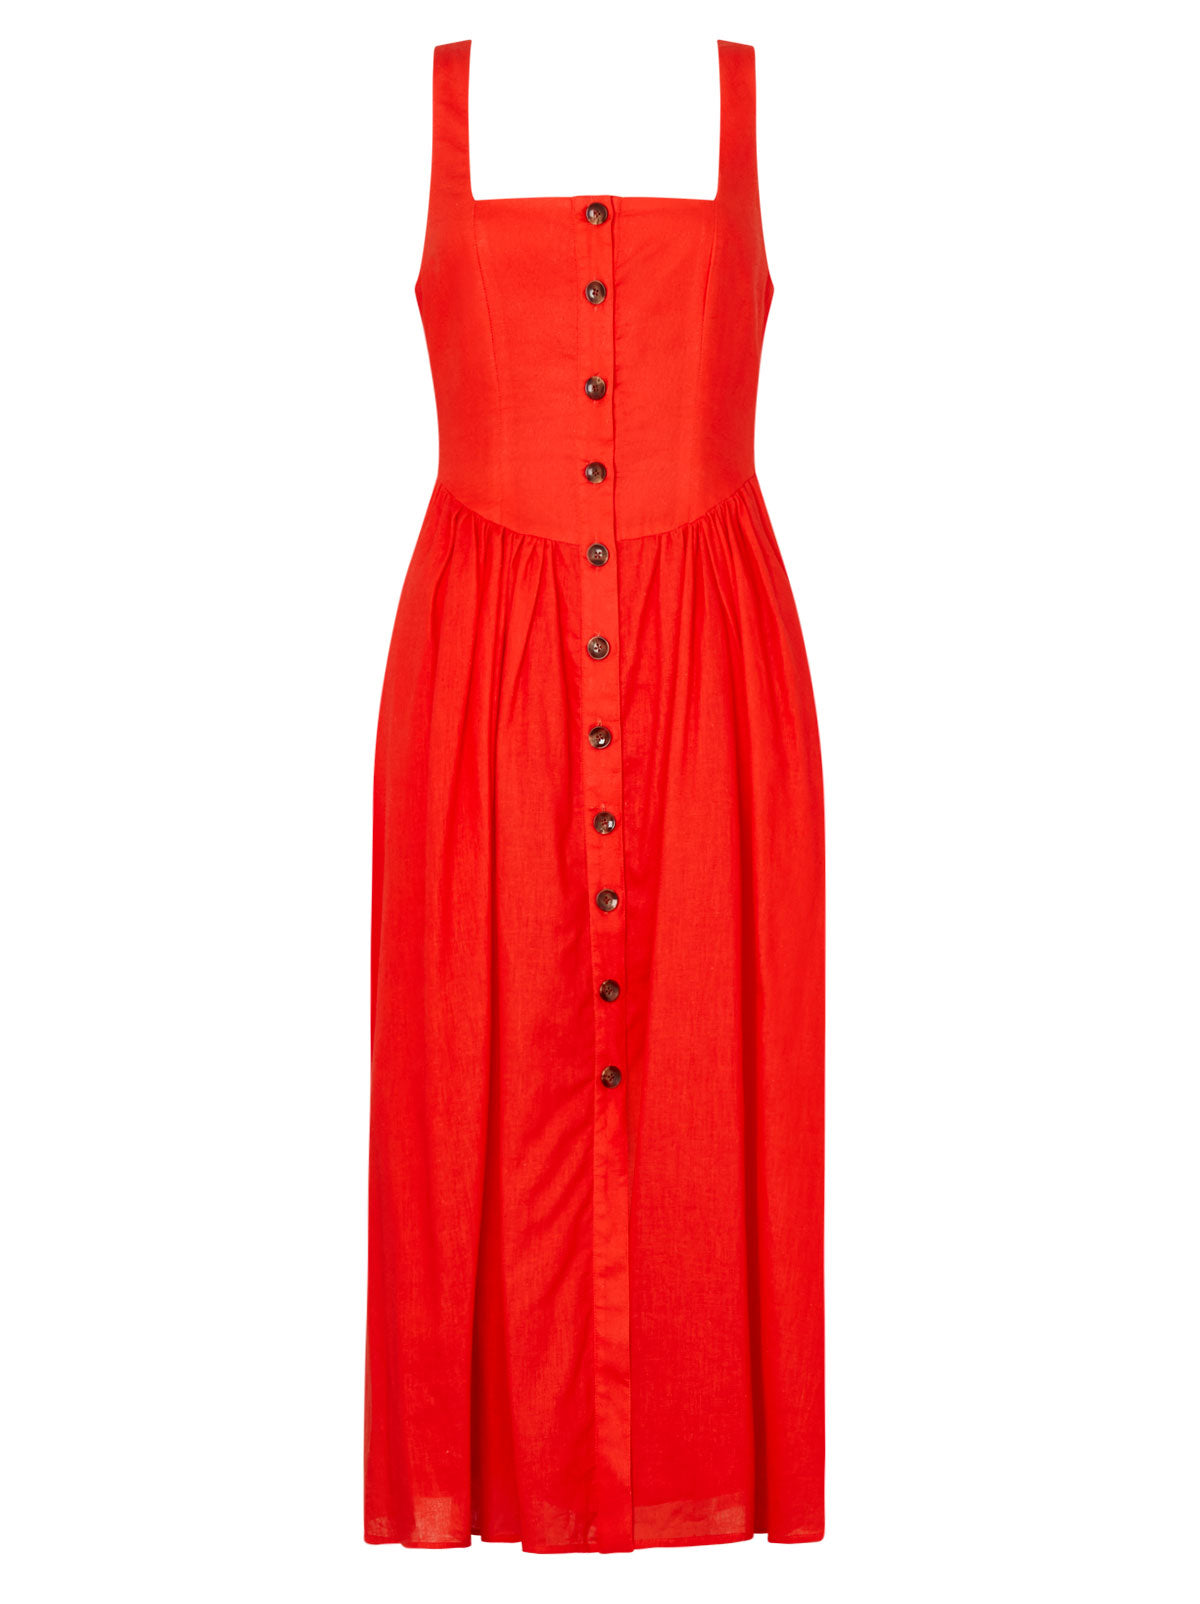 Olympia Red Midi Dress